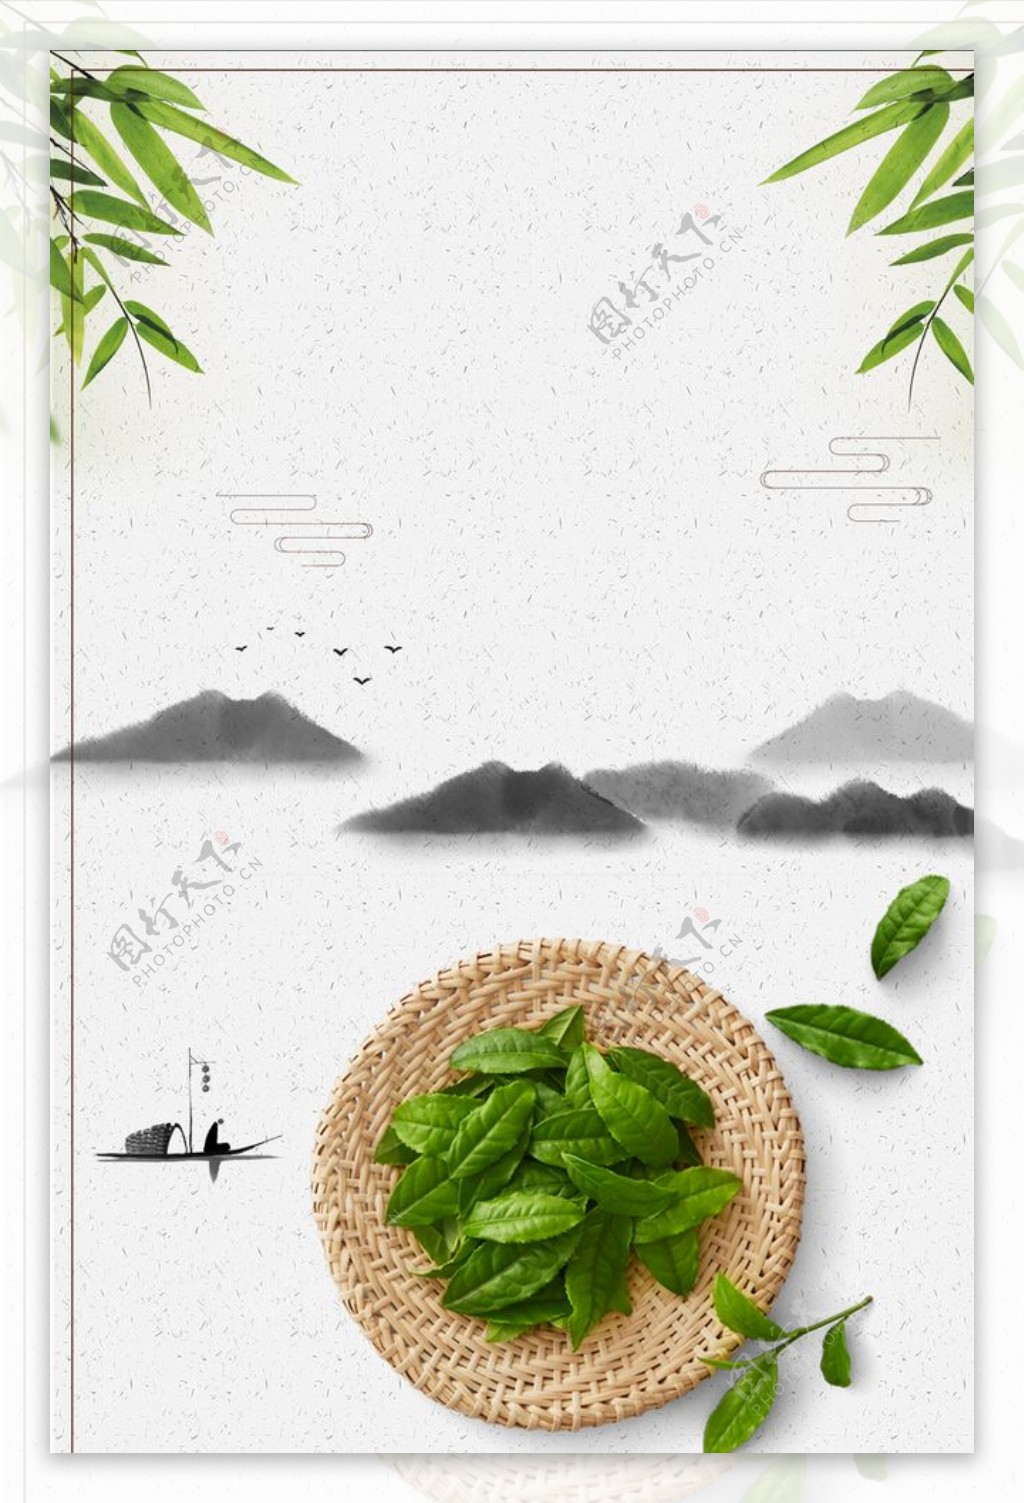 绿茶海报图片